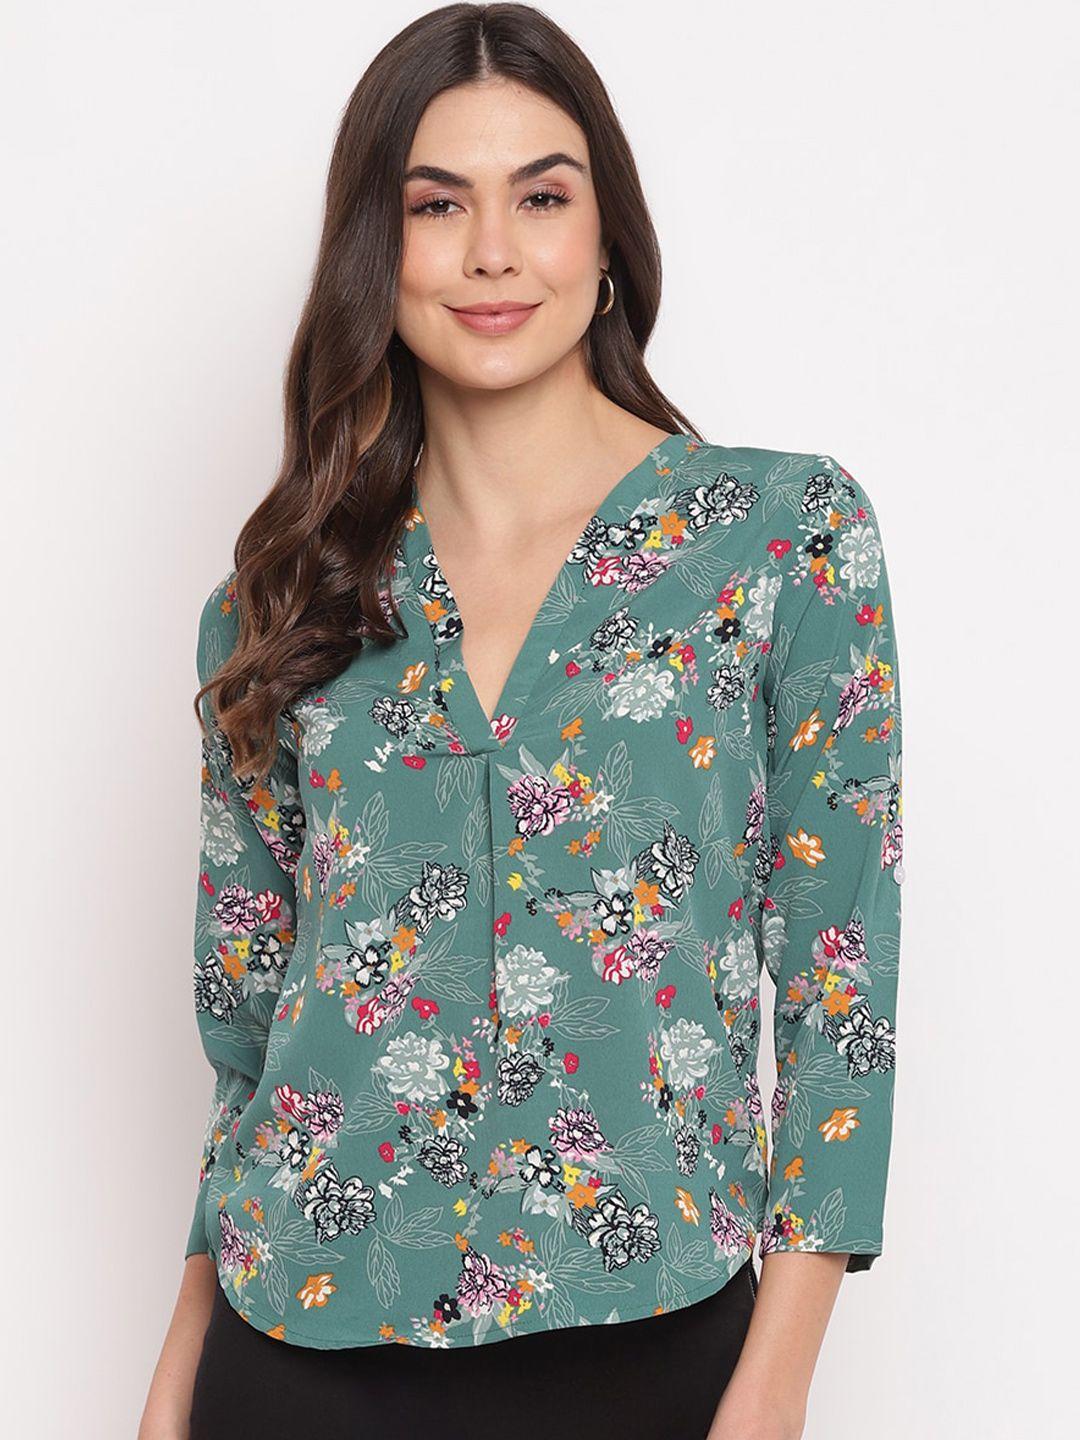 mayra floral print crepe shirt style top